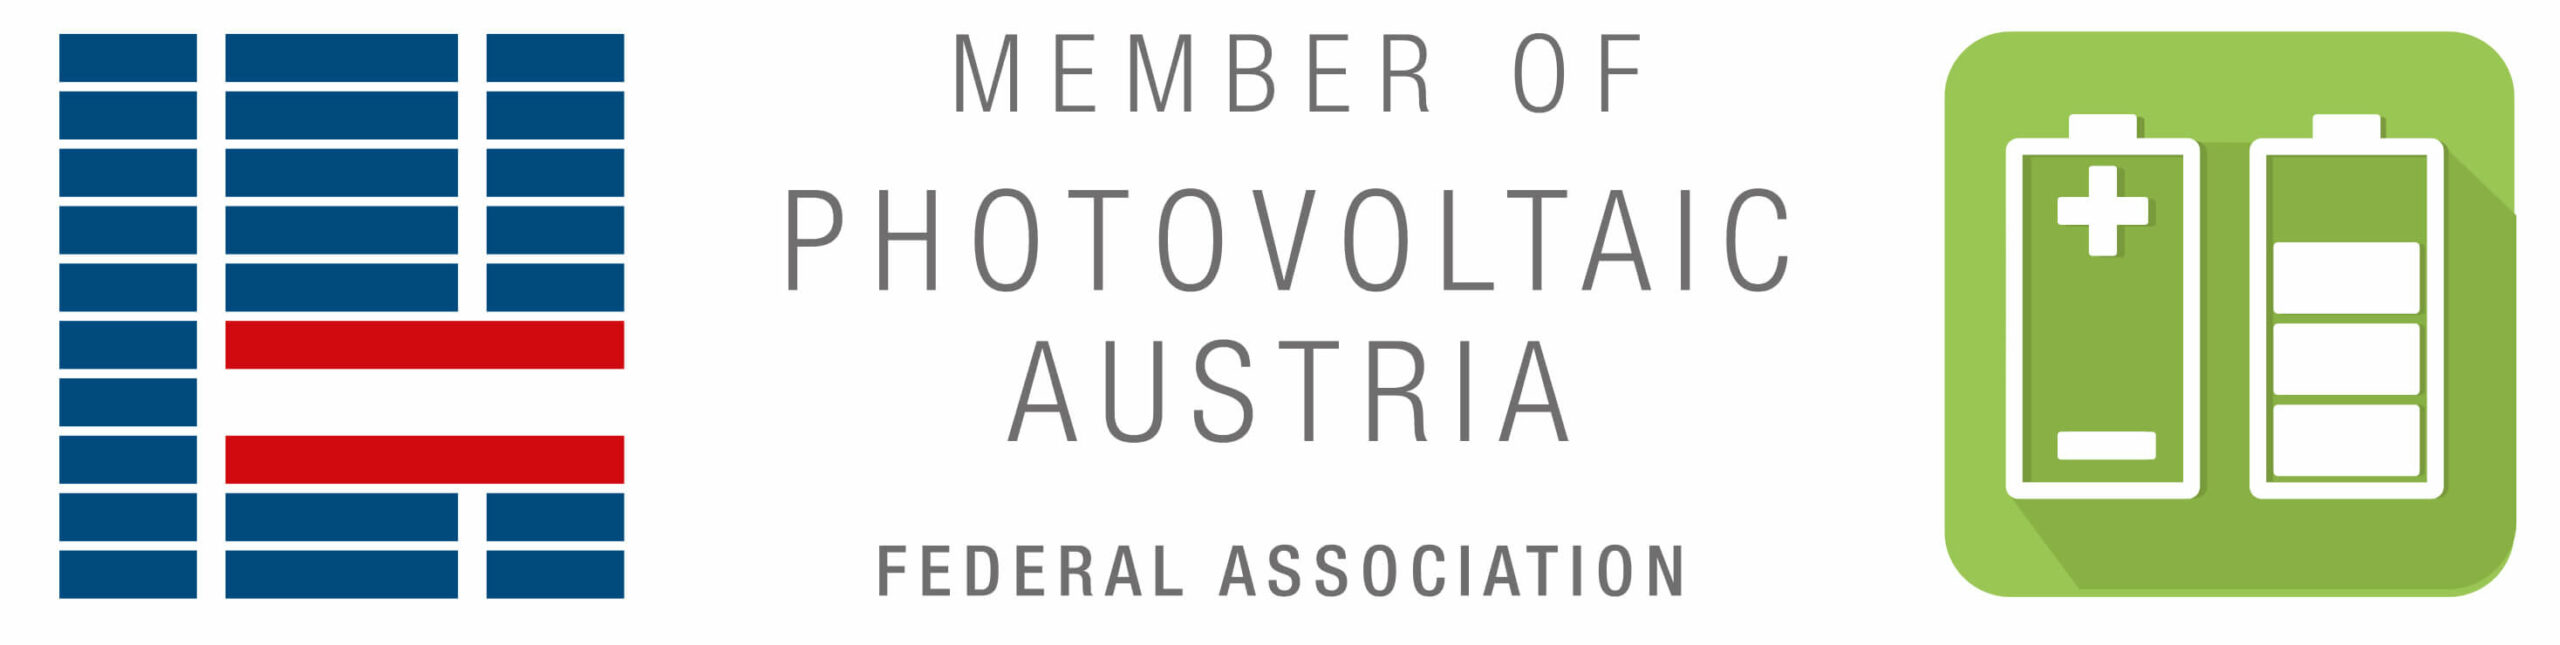 Hier sehen sie das Logo der Photovoltaic Austria Federal Association in den Farben Blau, Grün und Grau.